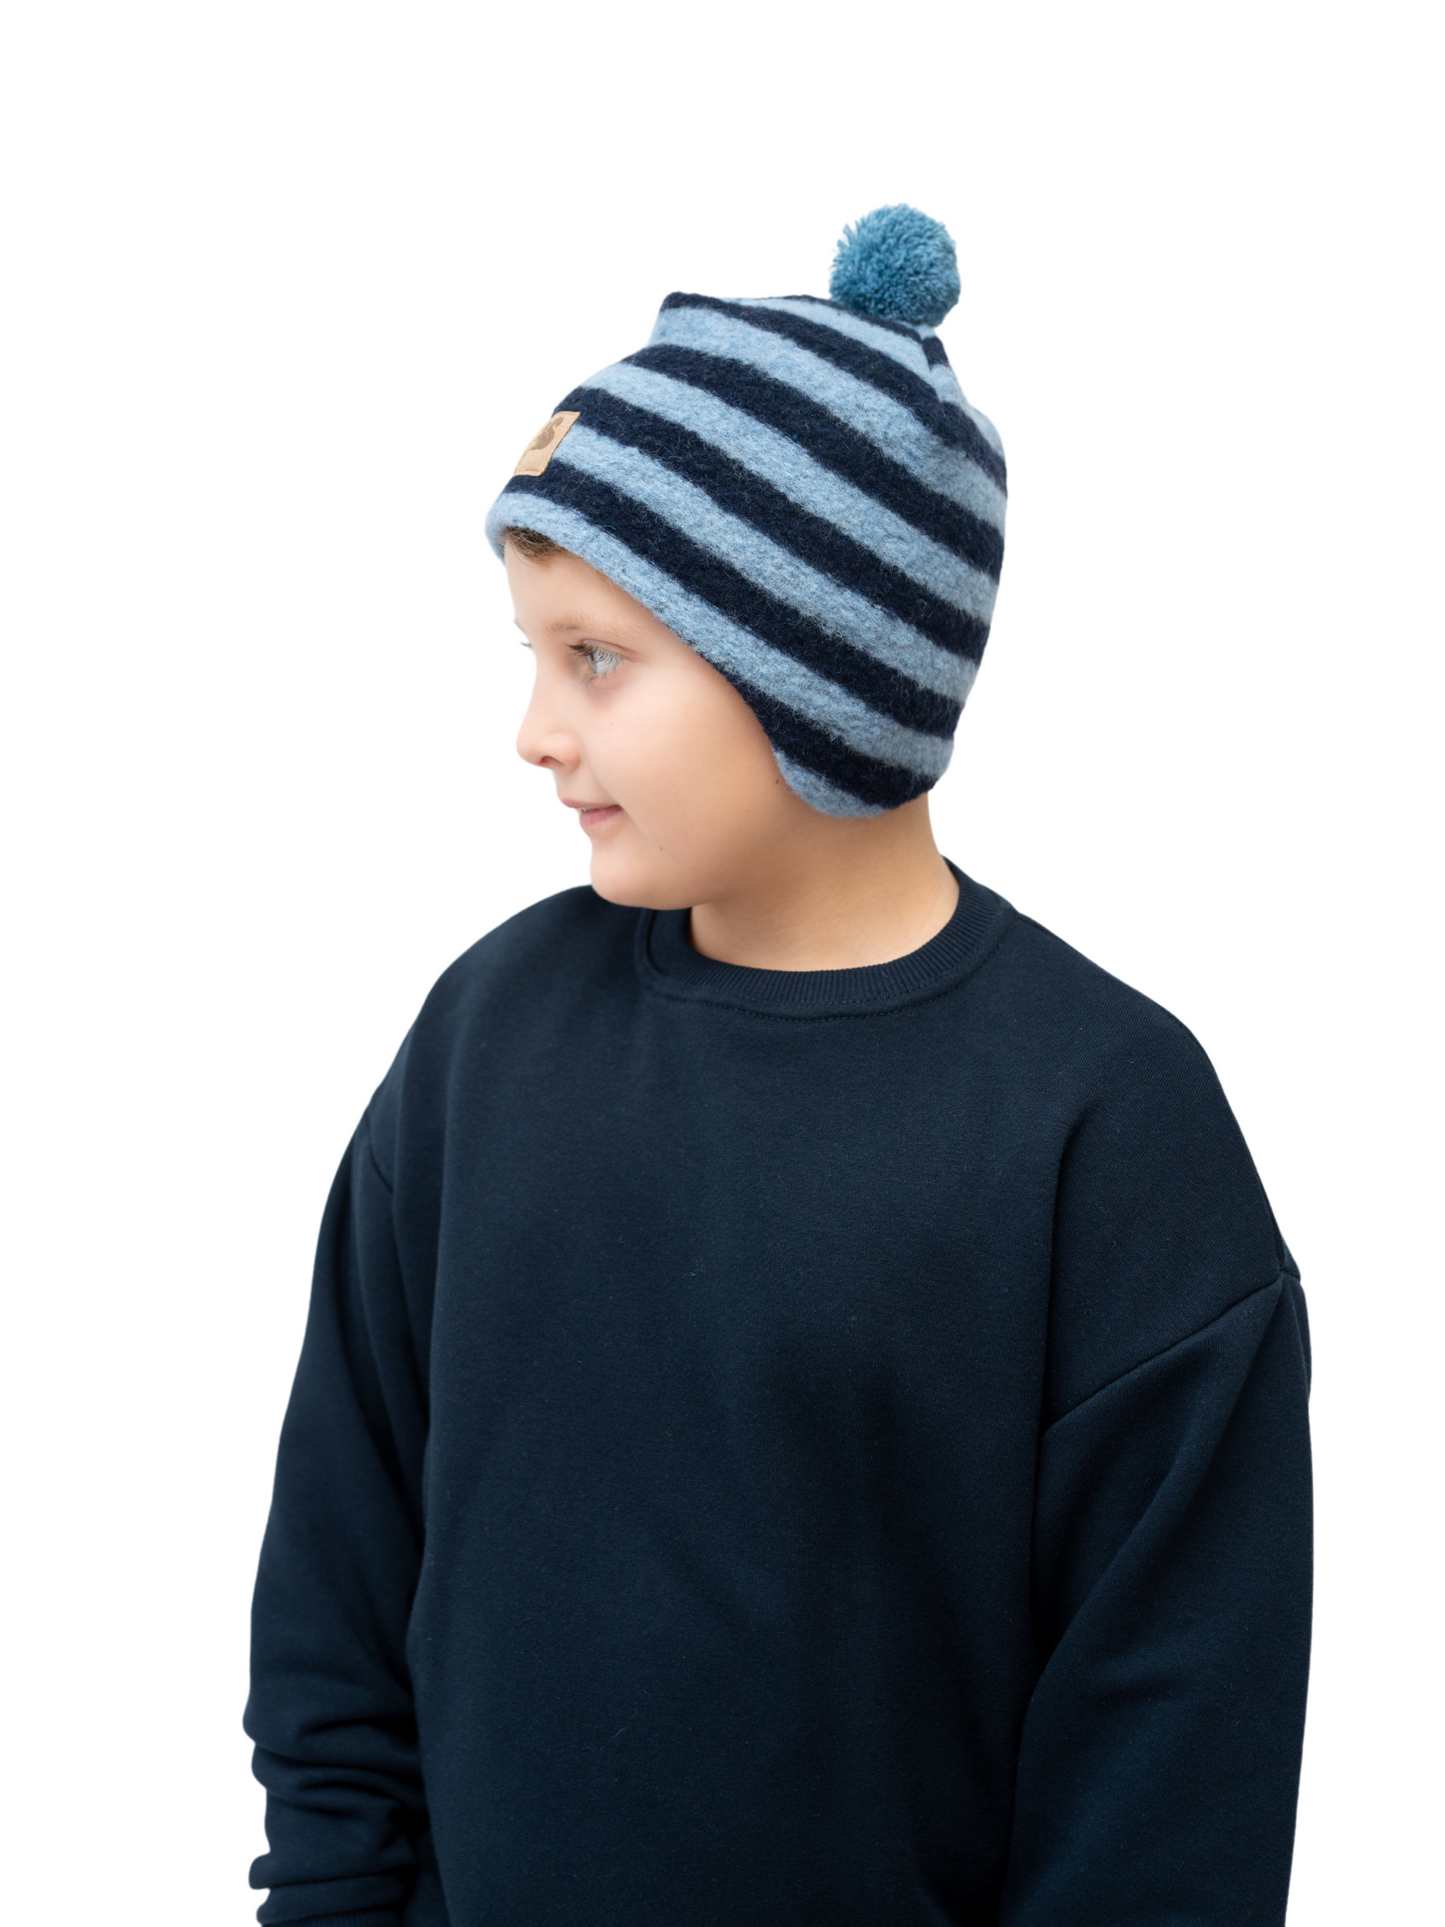 Vaikiška žieminė kepurė su vilna be raištelių, su vienu siūliniu bumbulu